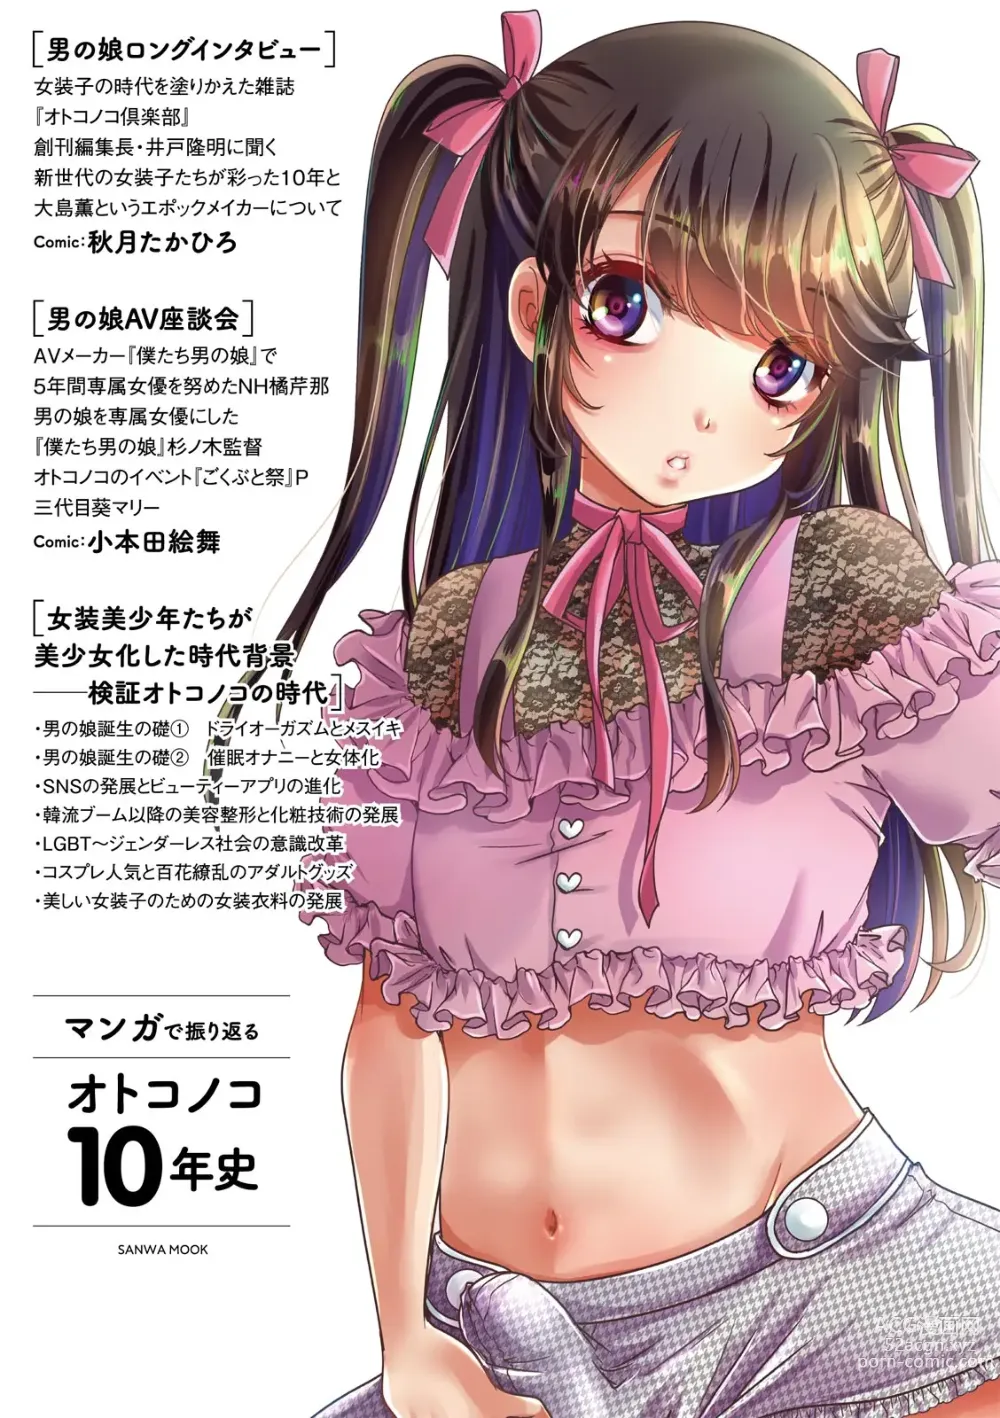 Page 132 of manga Manga de Furikaeru Otokonoko 10-nenshi